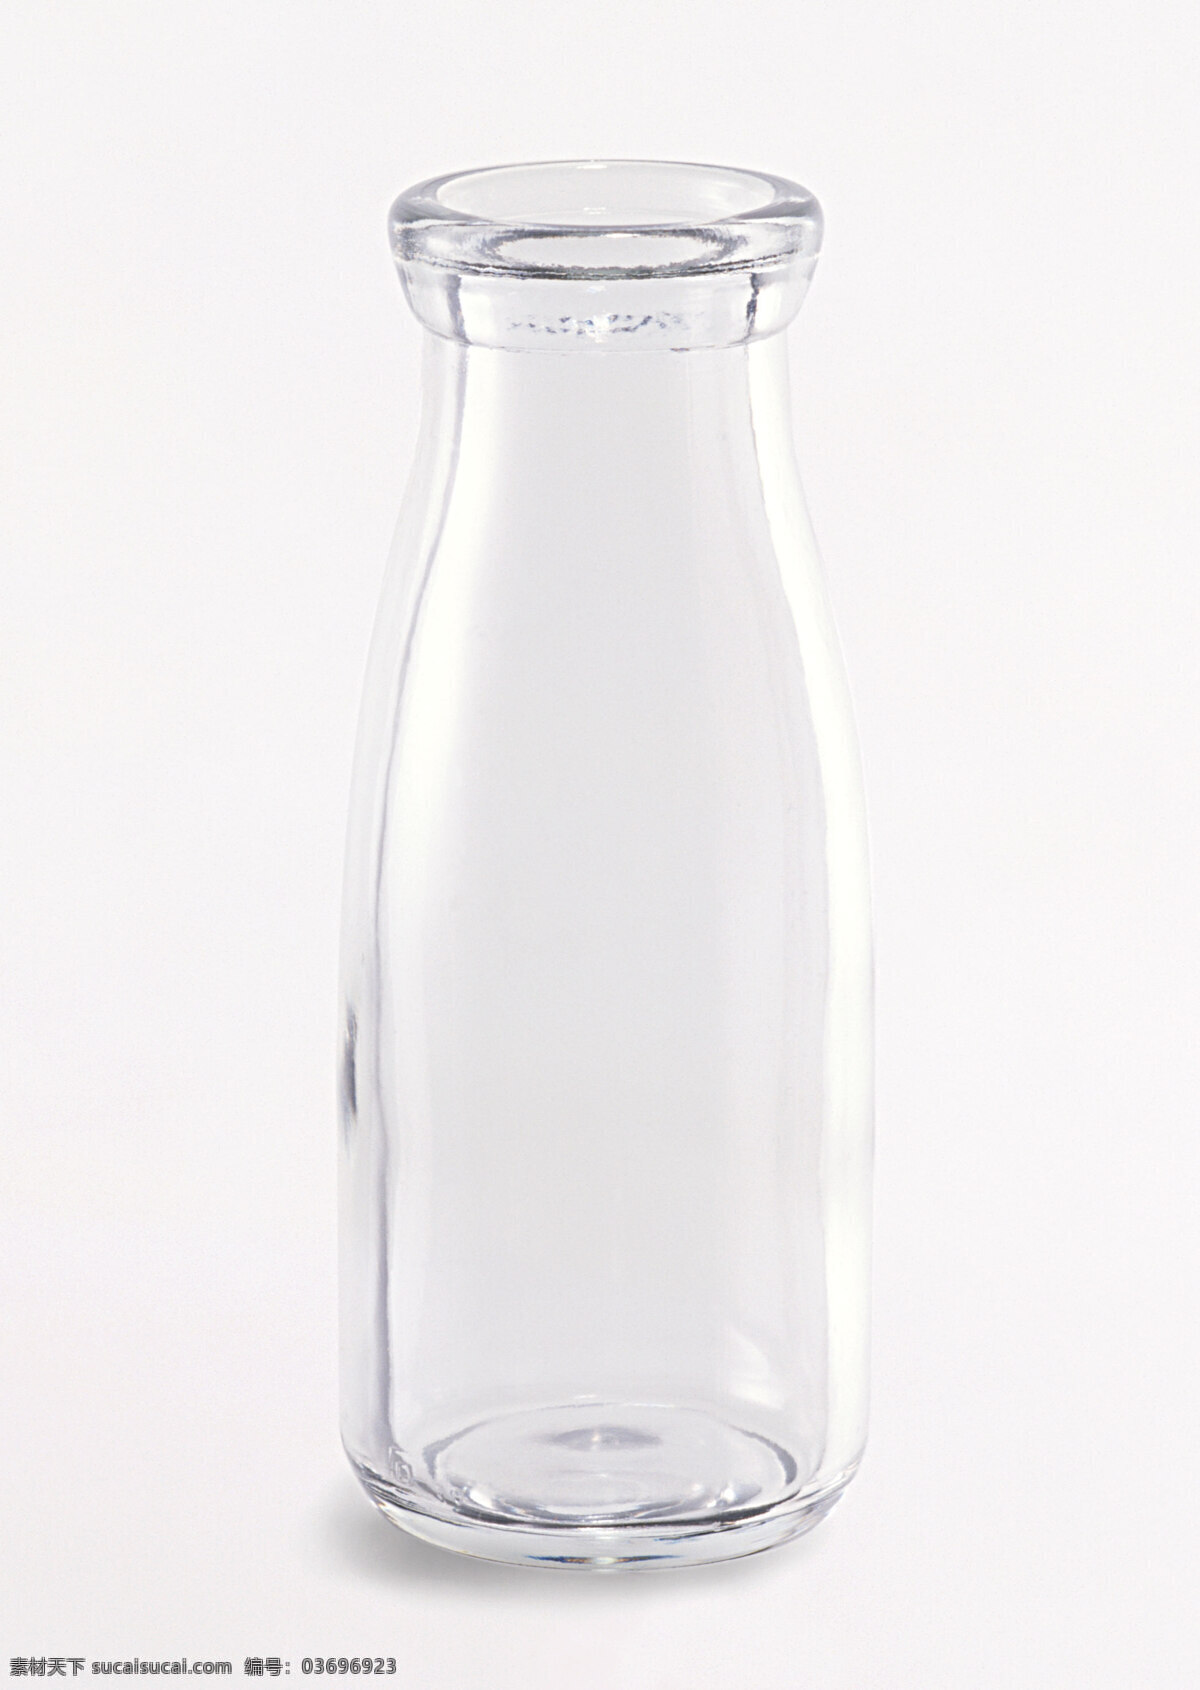 牛奶瓶 玻璃瓶 生活物品 生活意境摄影 生活百科 生活素材